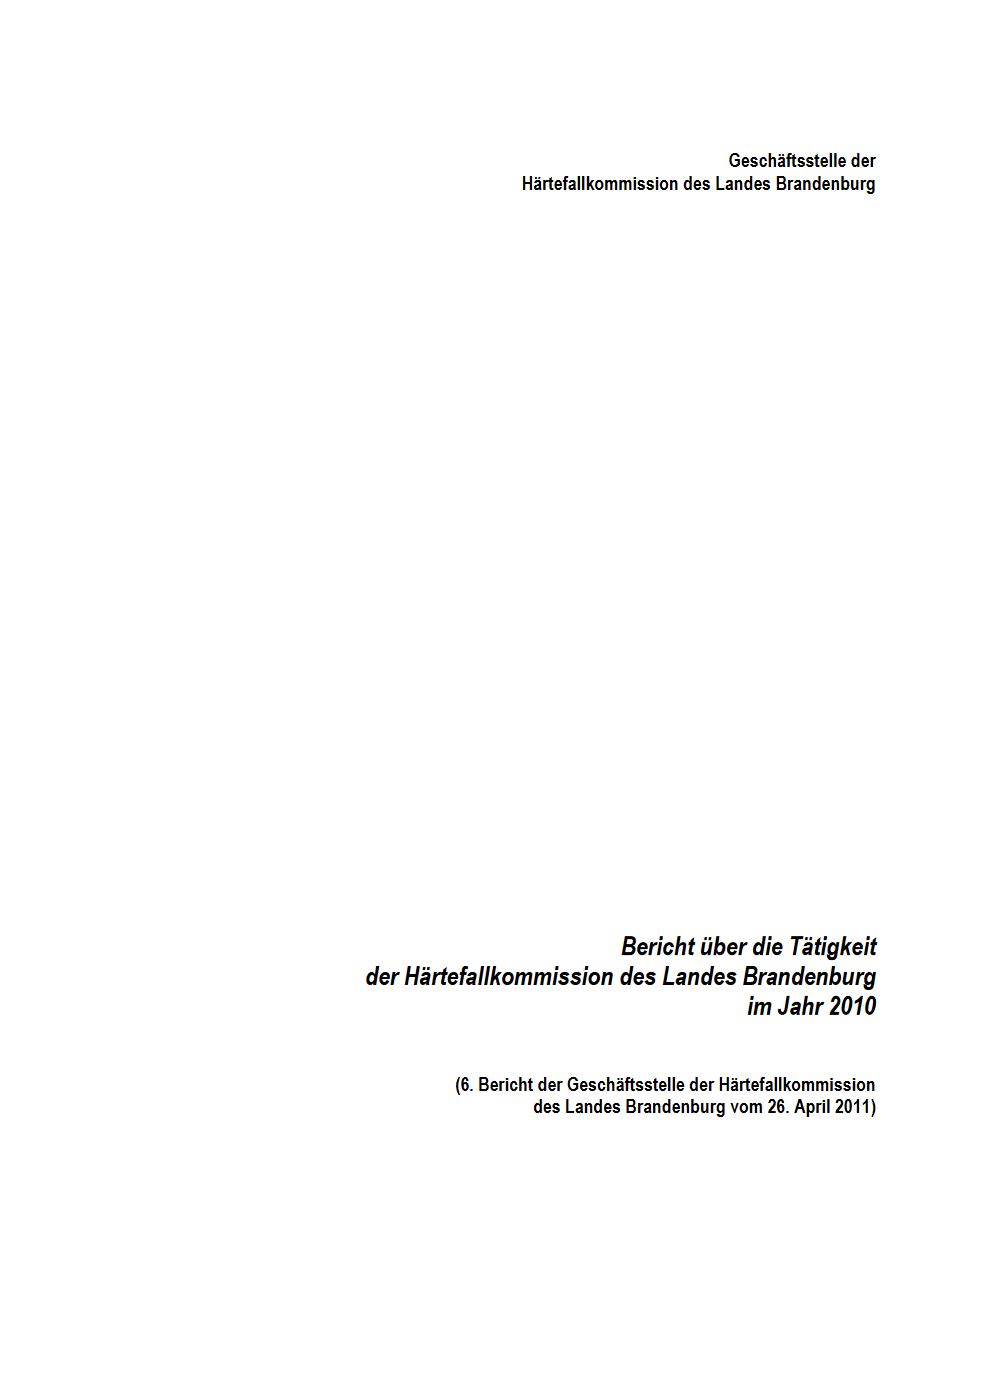 Bild vergrößern (Bild: Vorschau Tätigkeitsbericht Härtefallkommission 2010)